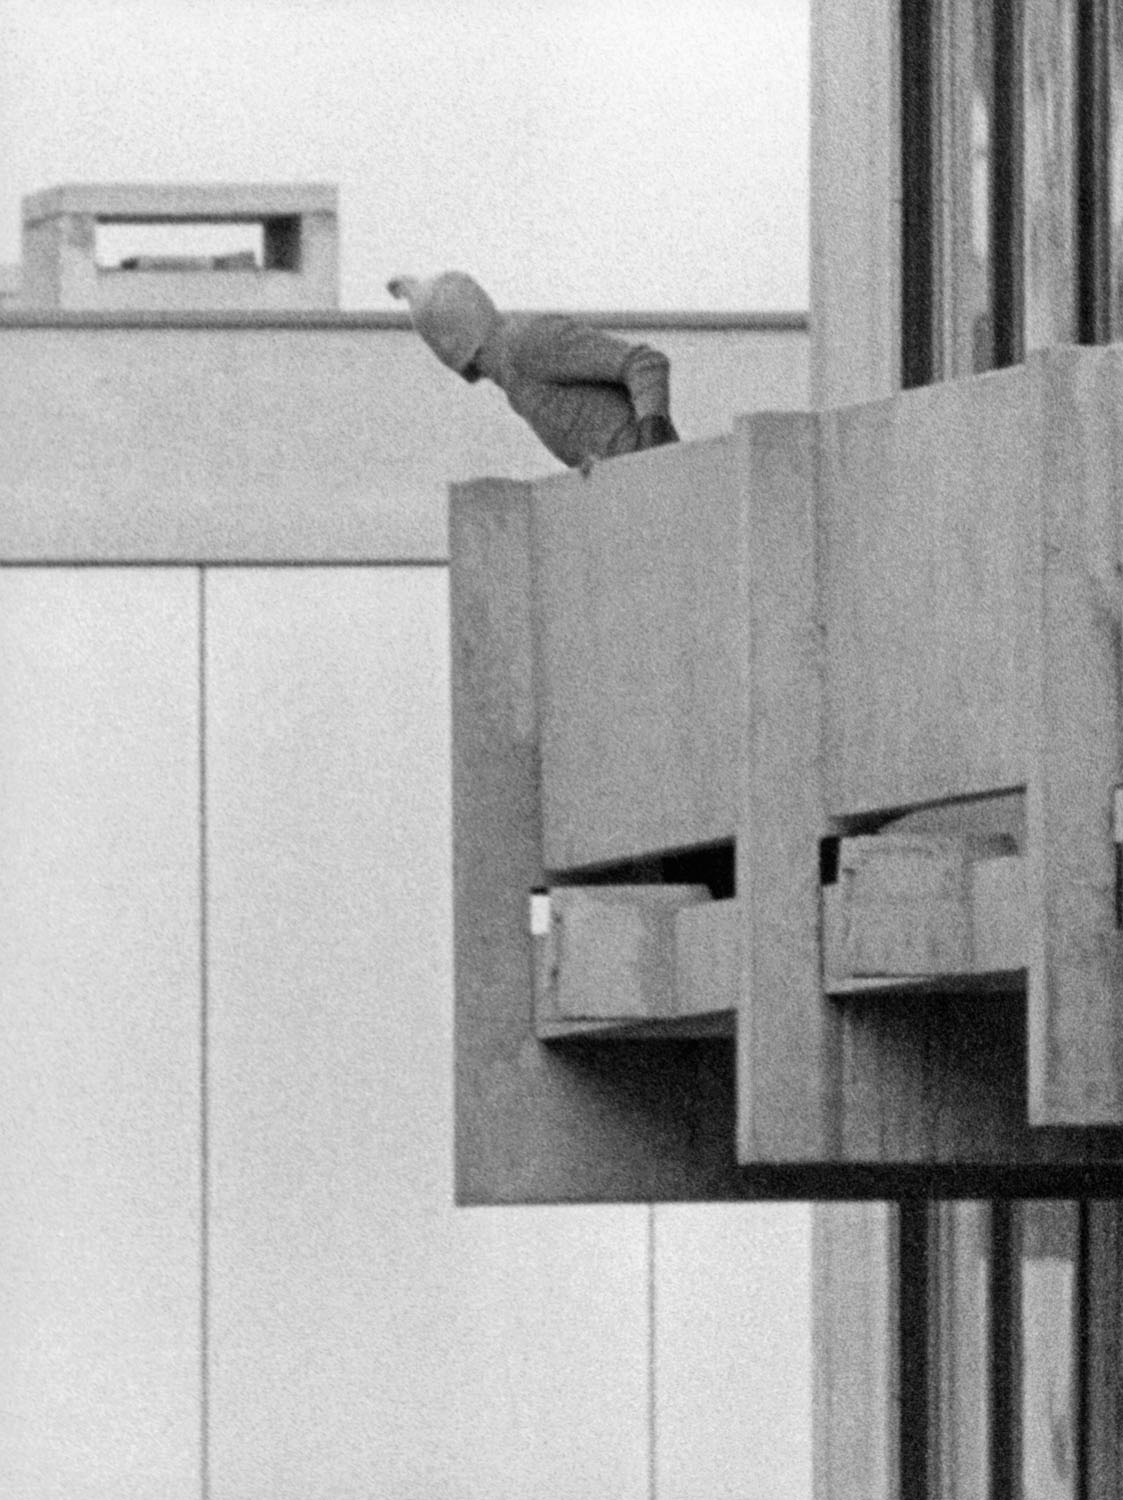 Schwarz-Weiß-Fotografie eines maskierten Mannes auf einem Balkon.